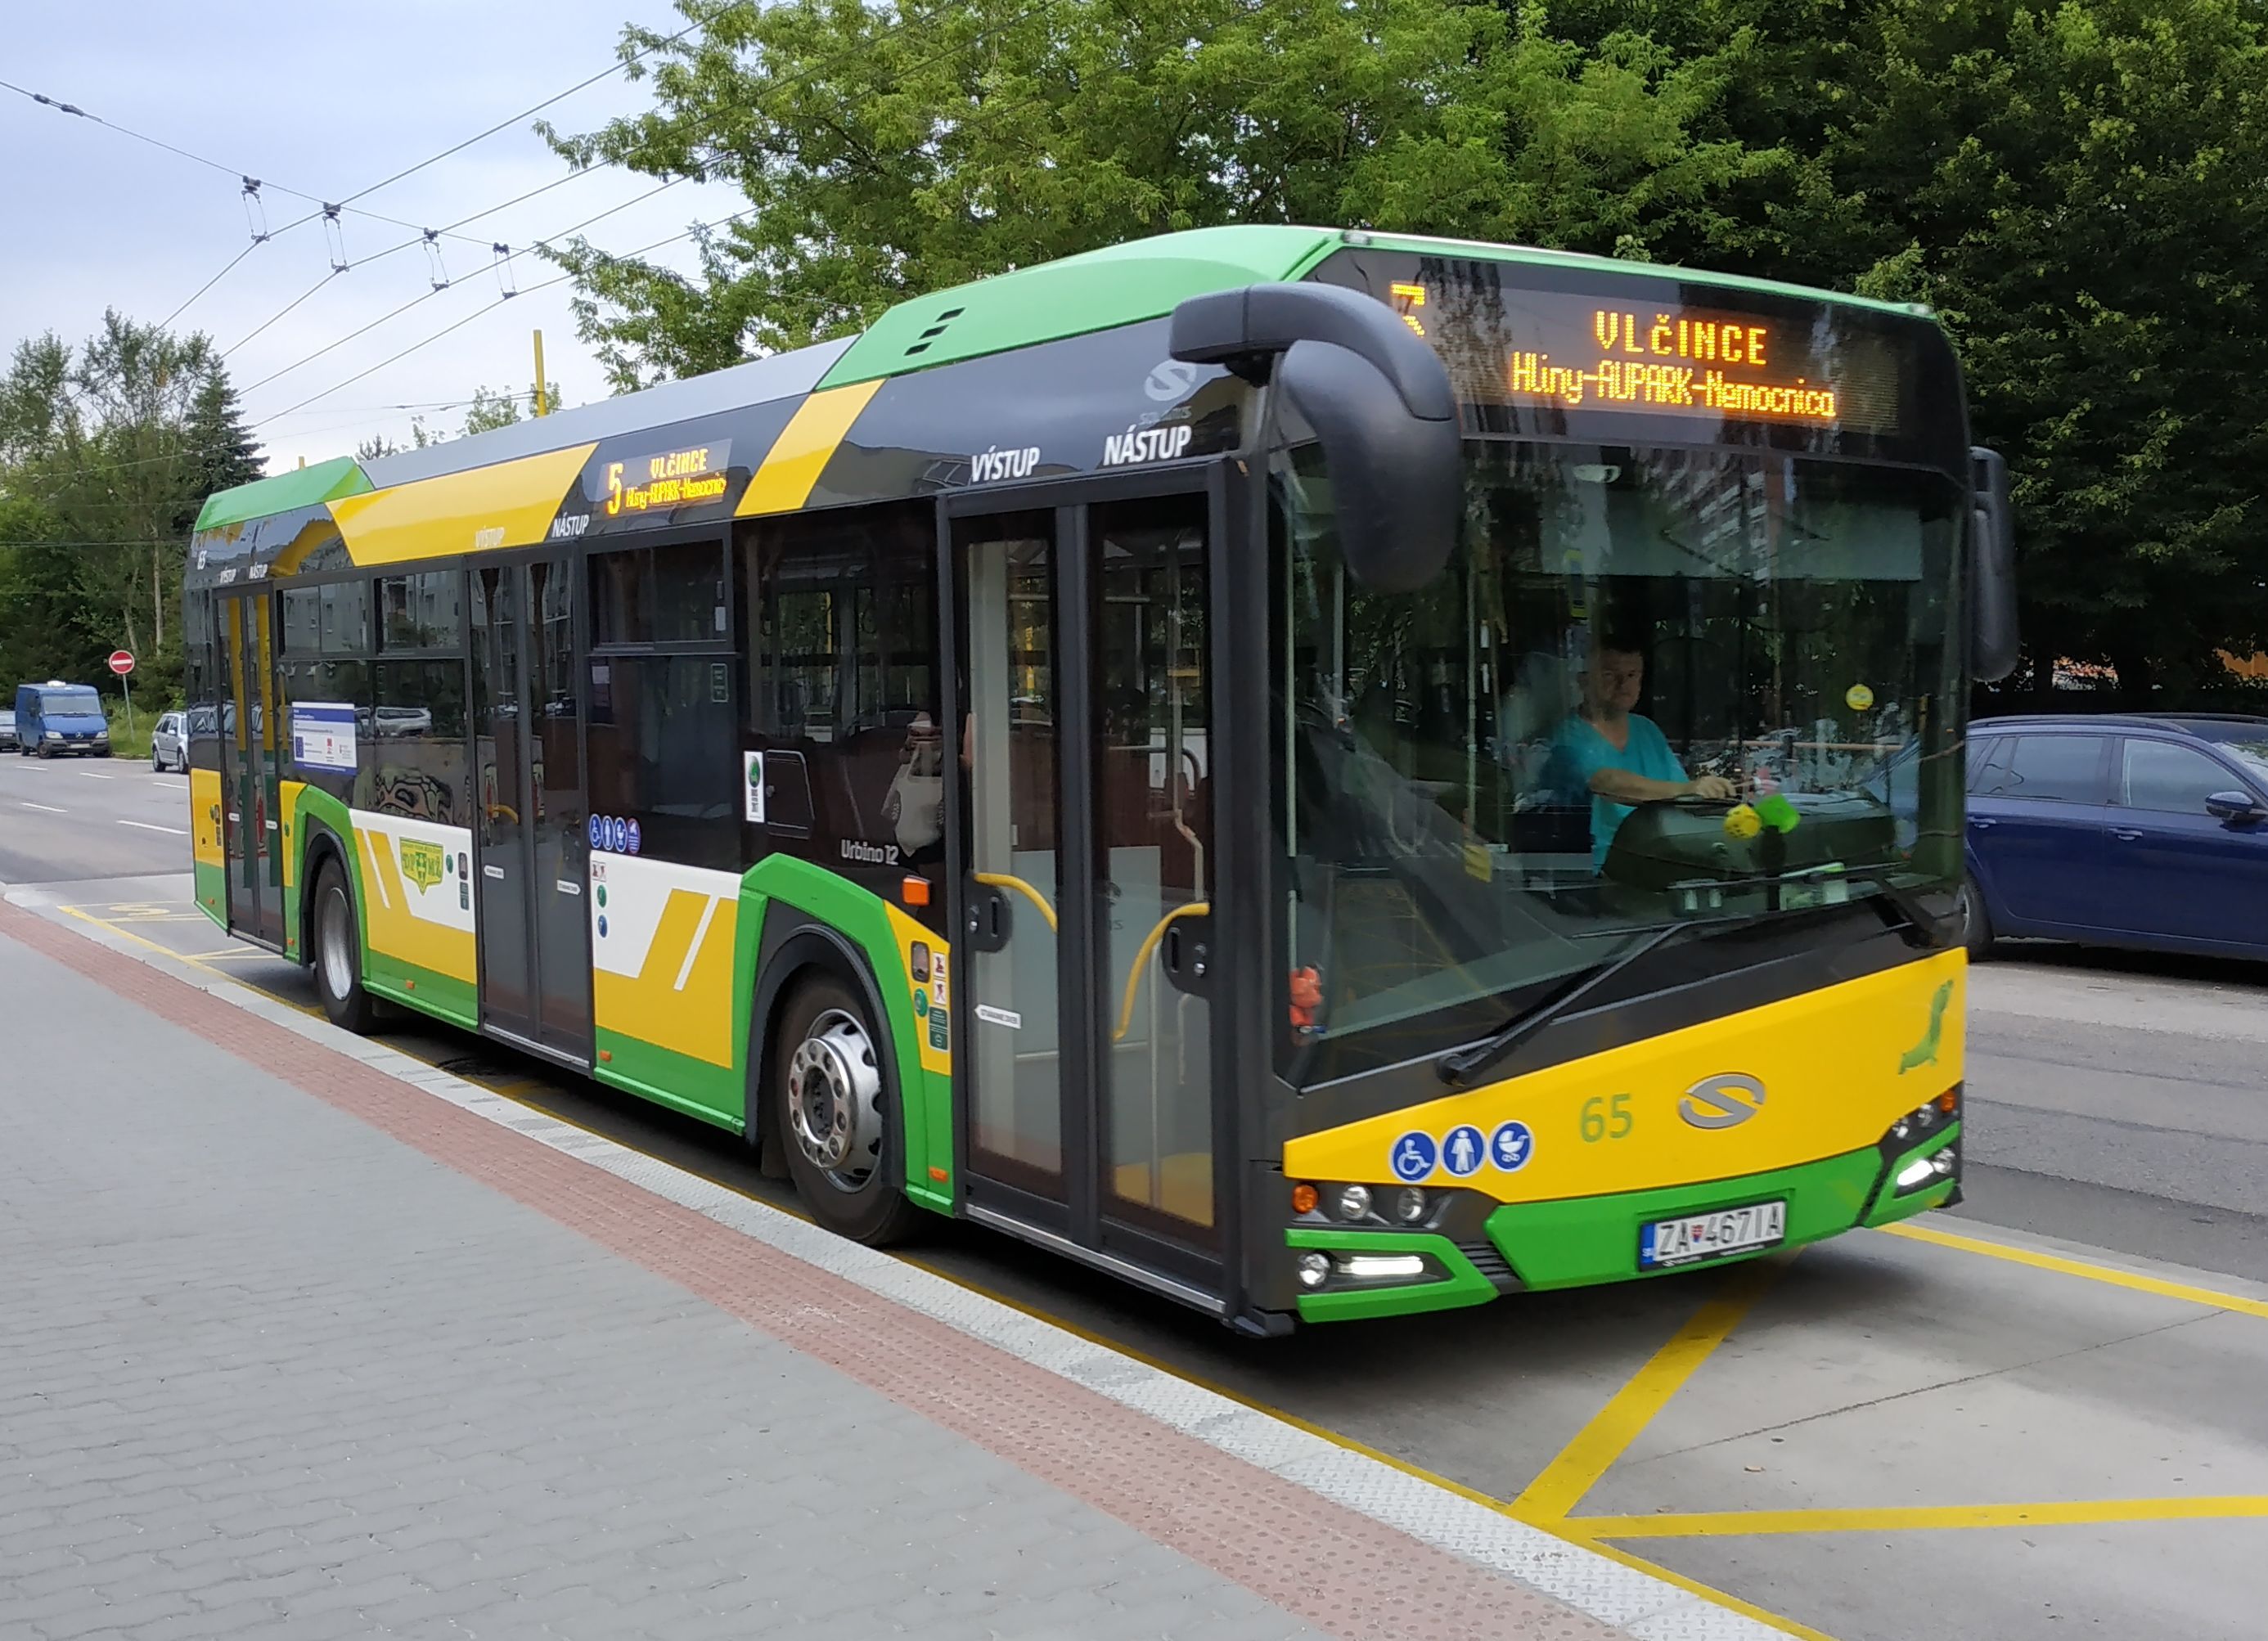 Jeden ze 14 nejnovìjších autobusù Solaris byl nasazen na trolejbusovou linku 5, která doplòuje páteøní linky 3, 4 a 14 a spojuje sídlištì Vlèince se sídlištìm Solinky pøes centrum. Tato linka má interval 20 minut.